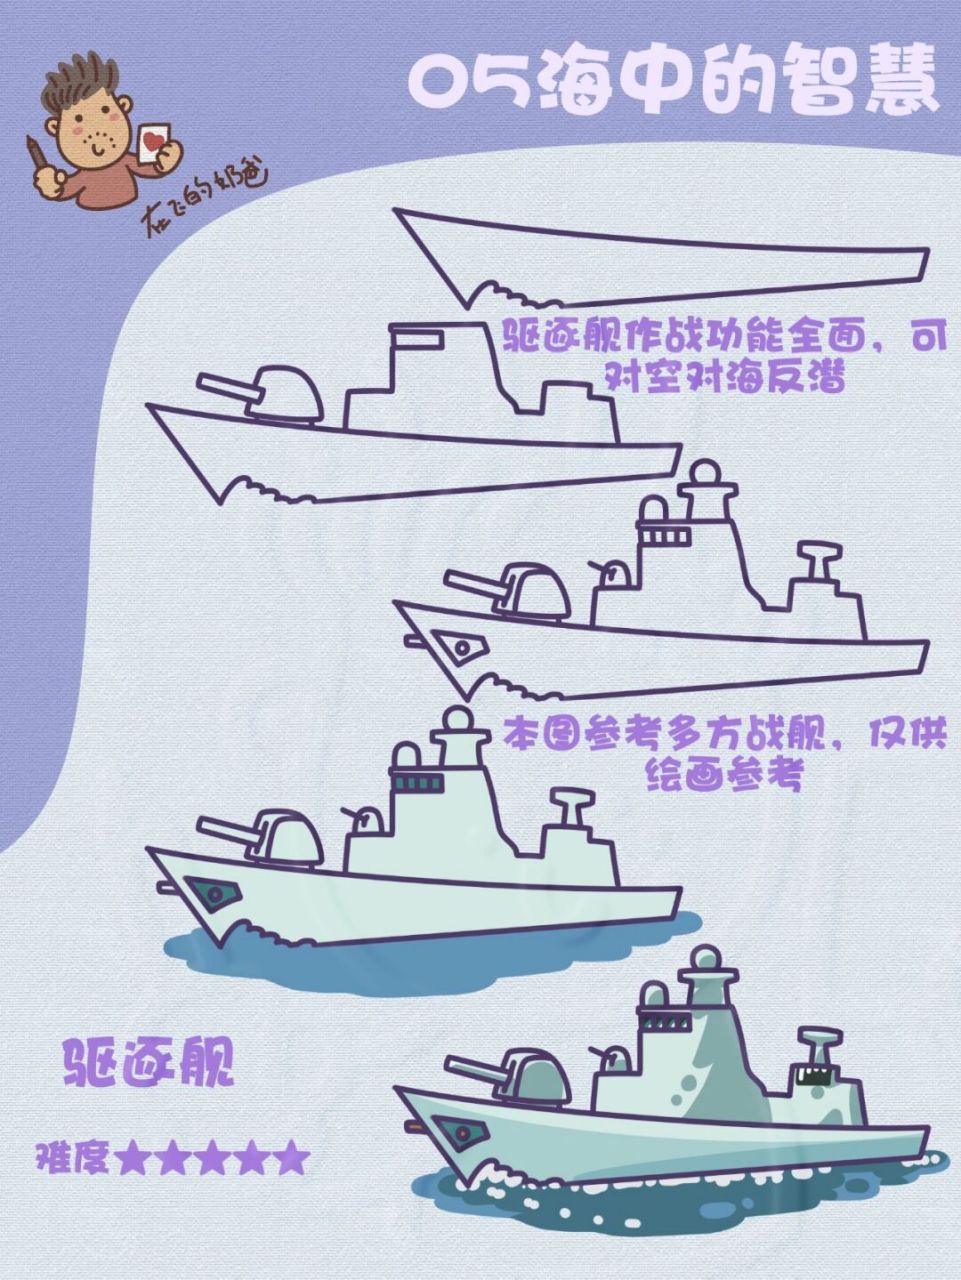 驱逐舰简笔画中国图片